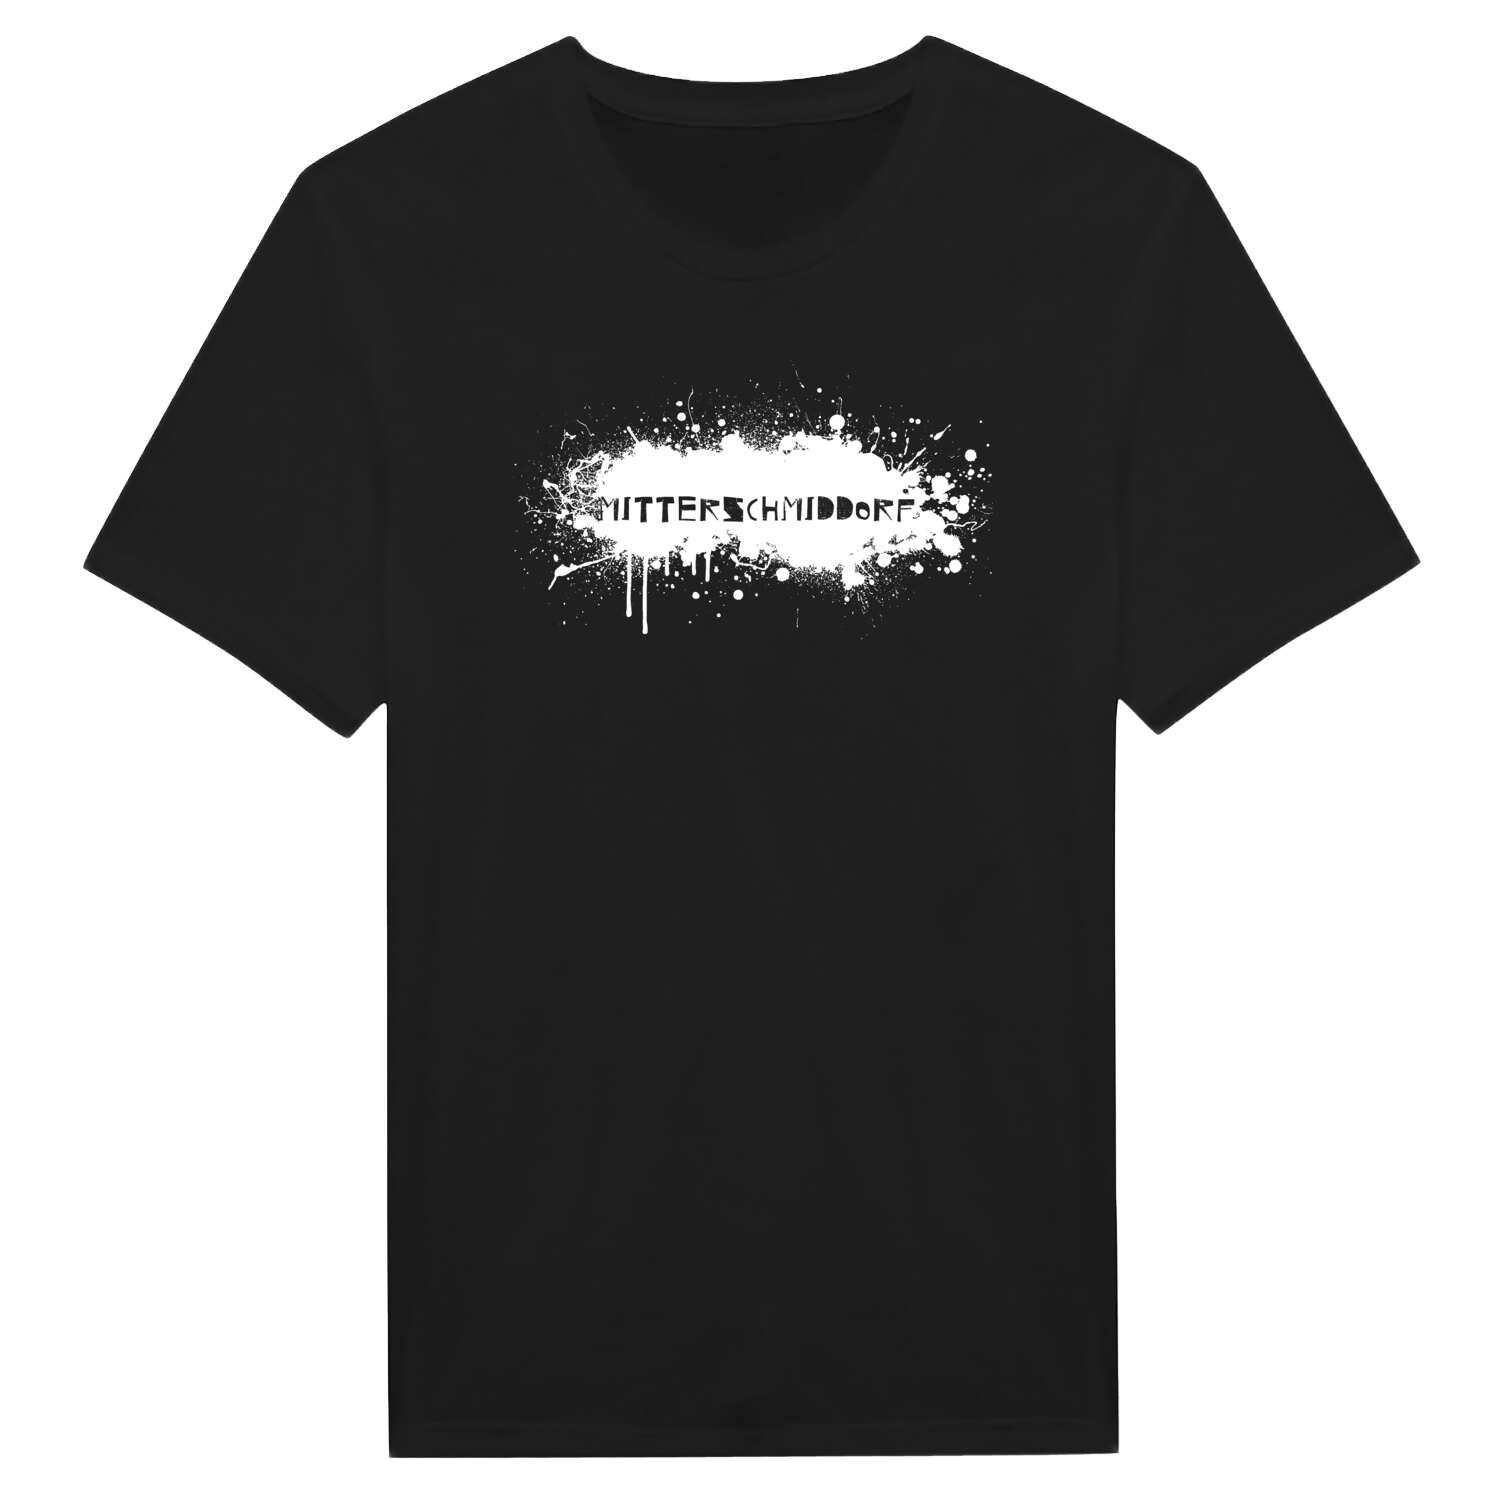 Mitterschmiddorf T-Shirt »Paint Splash Punk«